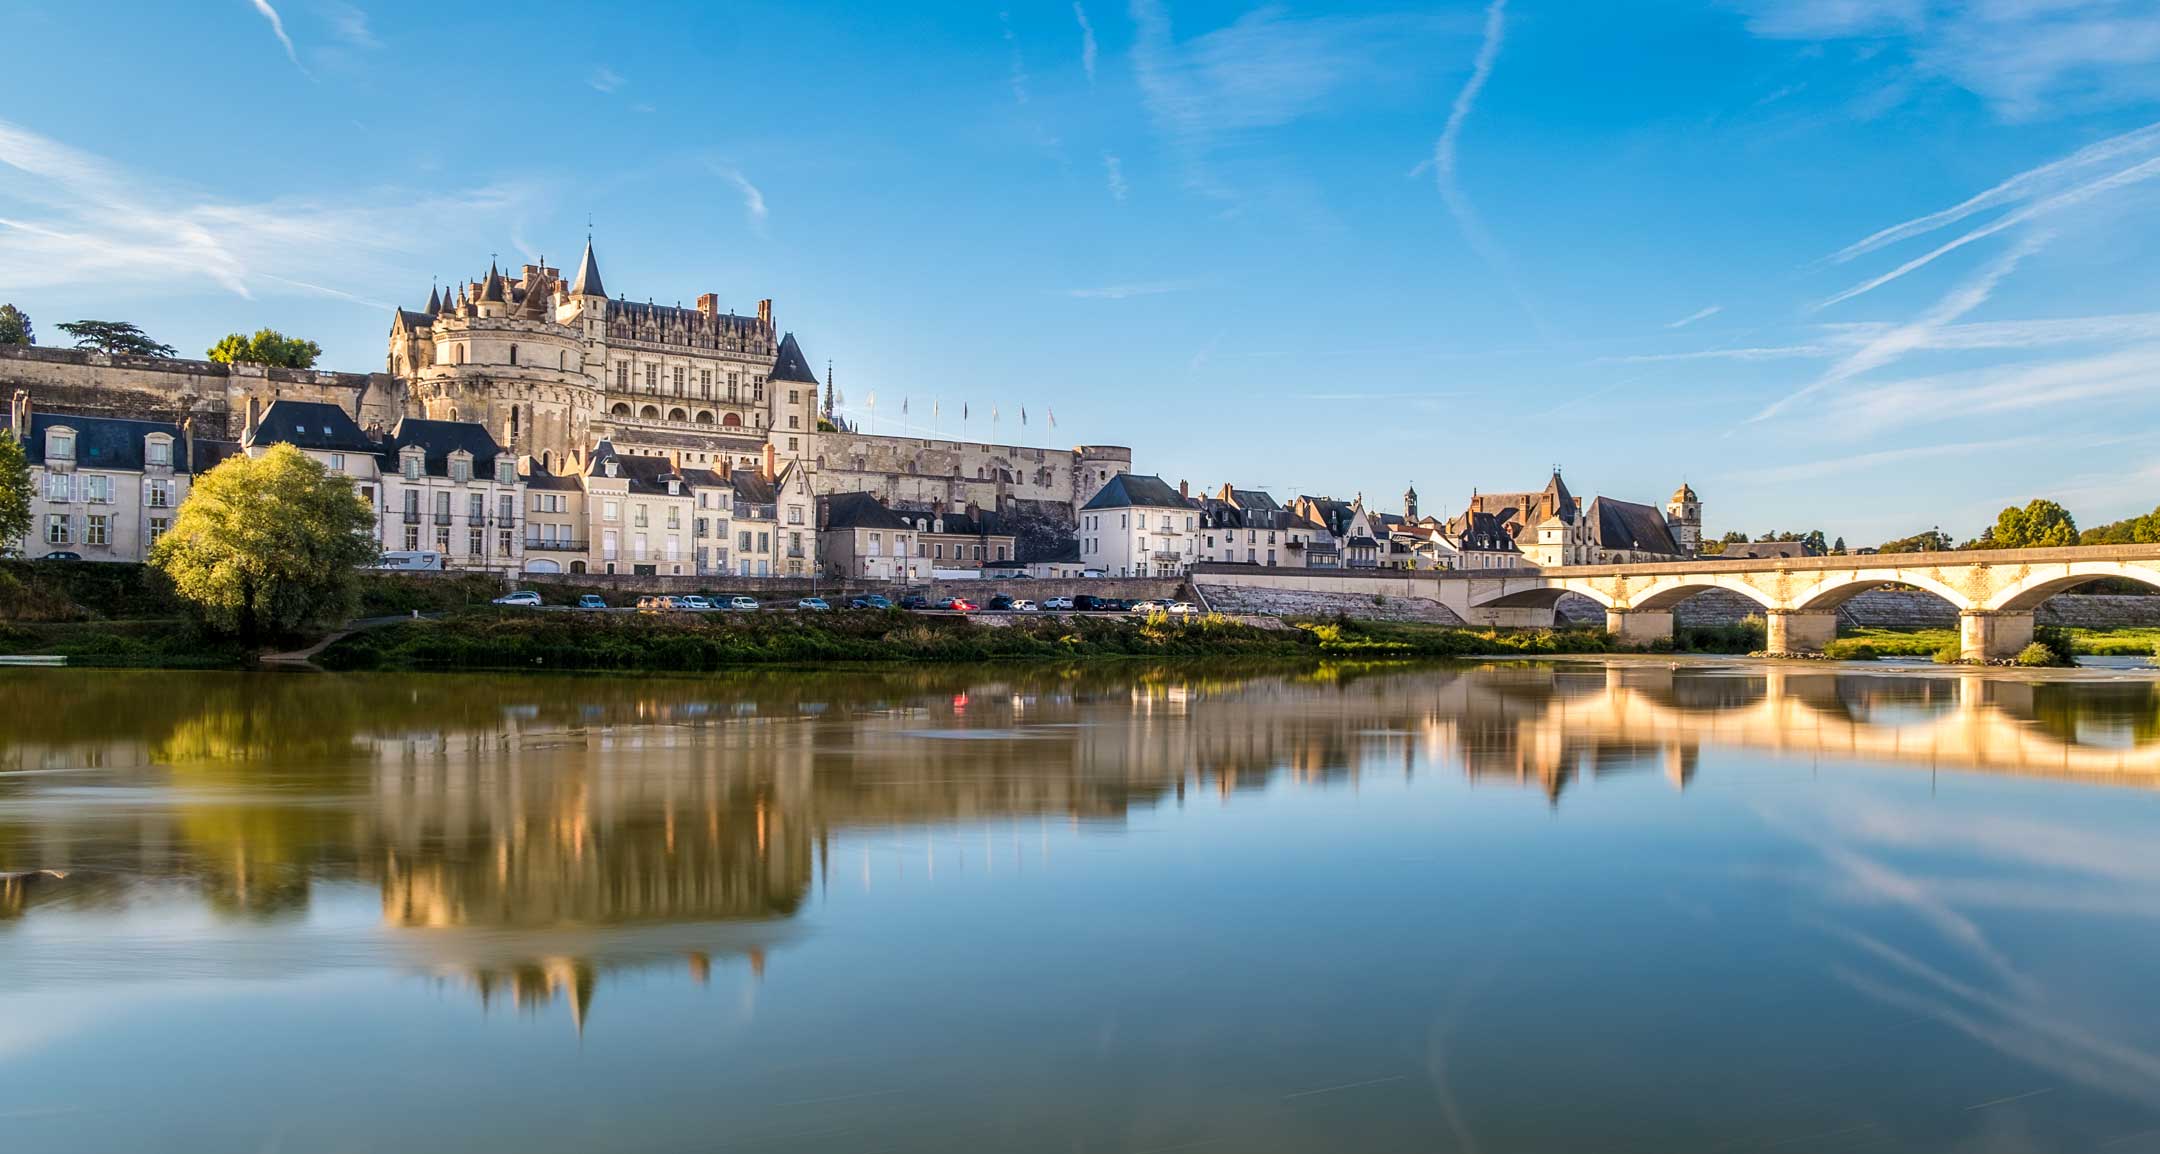 Partons à la découverte du Val de Loire en voiture de collection